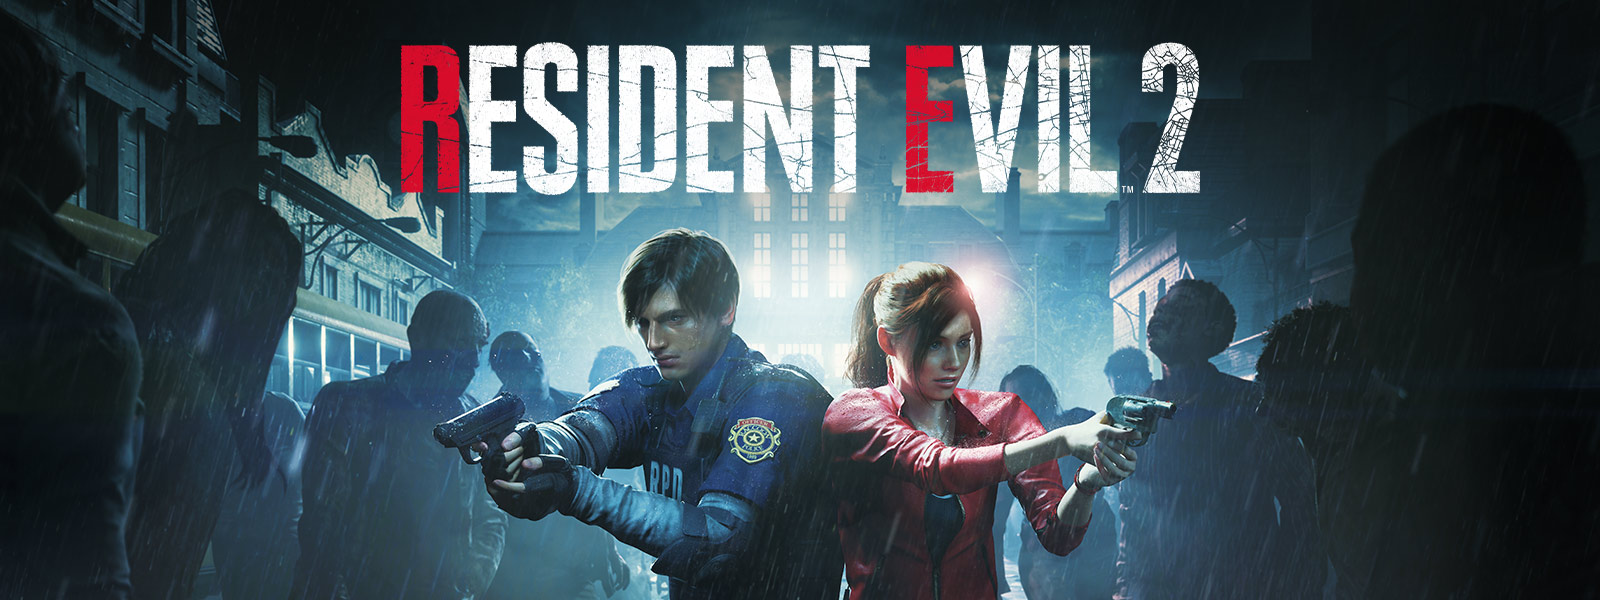 Resident Evil 2, Leon Kennedy und Claire Redfield stehen nebeneinander mit auf die sie umzingelnden Zombies gerichteten Waffen